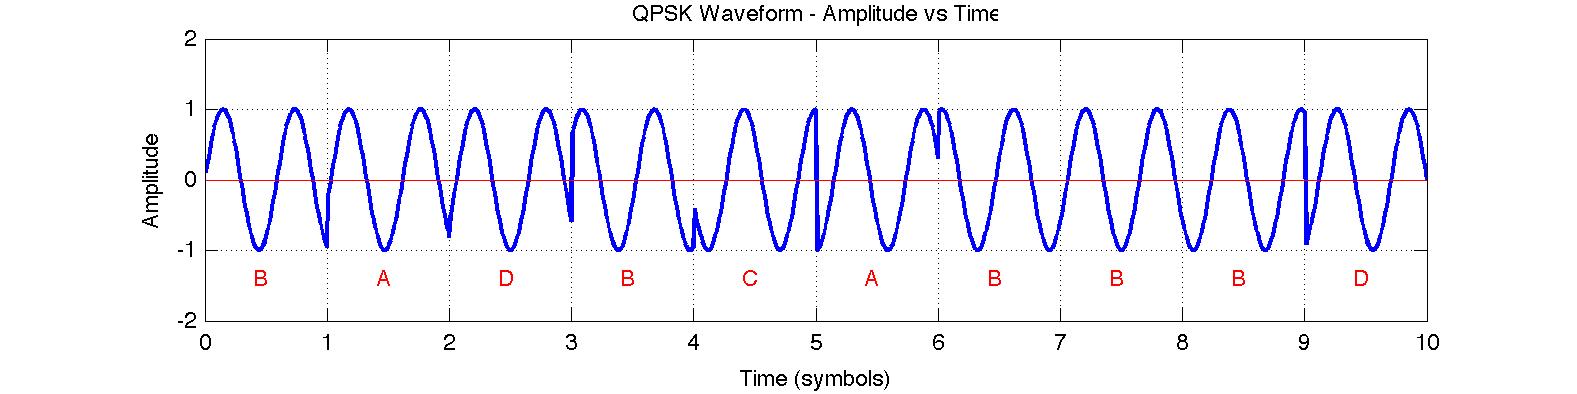 QPSK Waveform